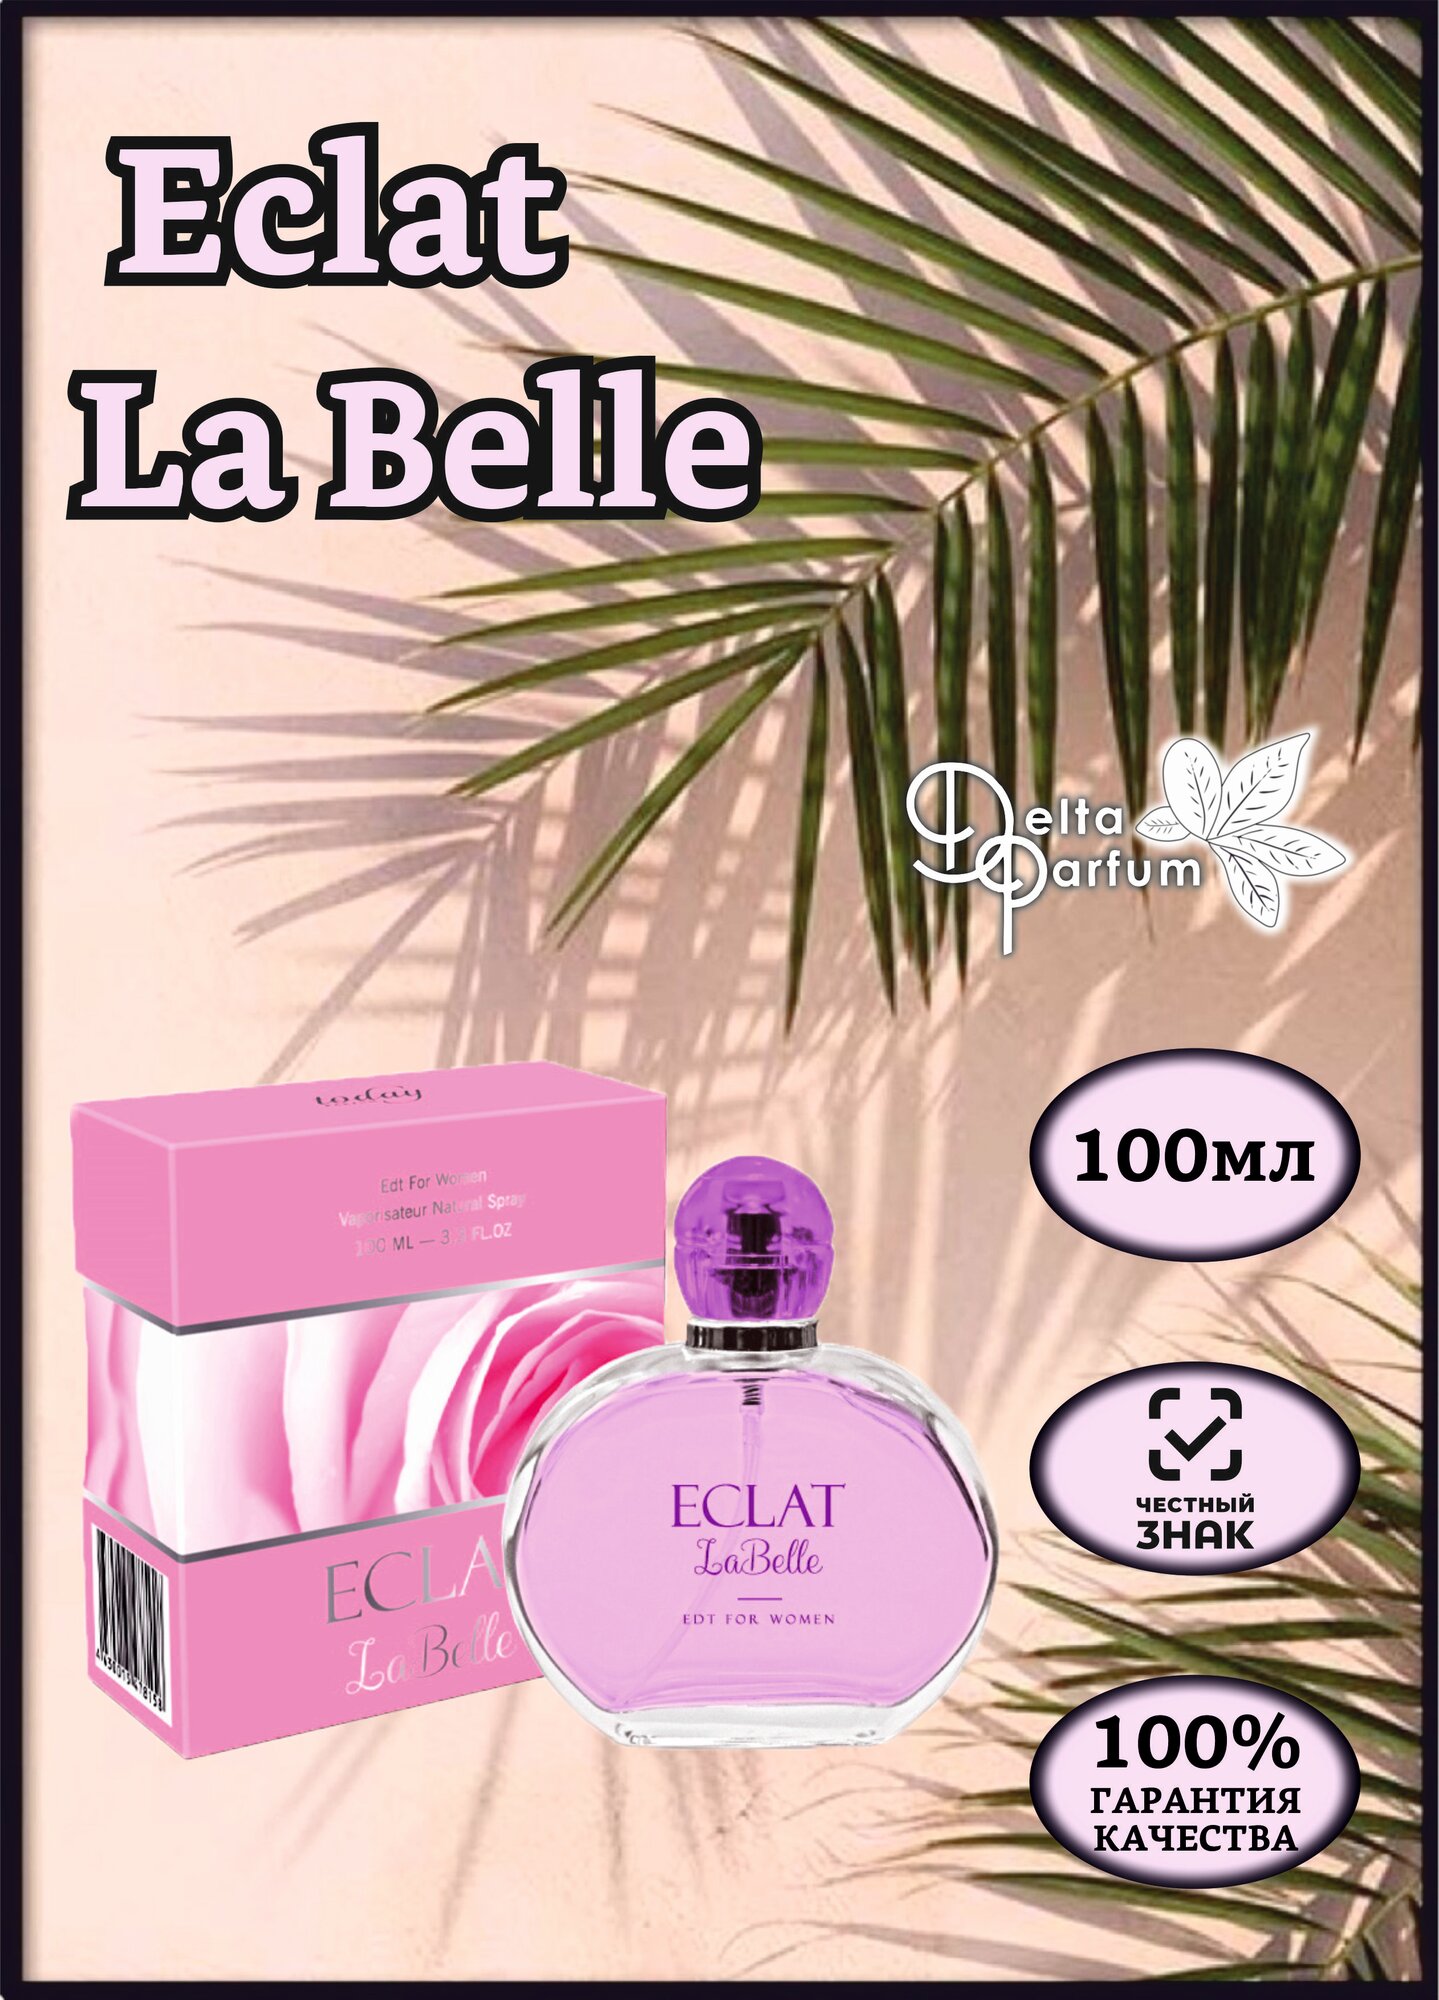 TODAY PARFUM (Delta parfum) Туалетная вода EECLAT LA BELLE